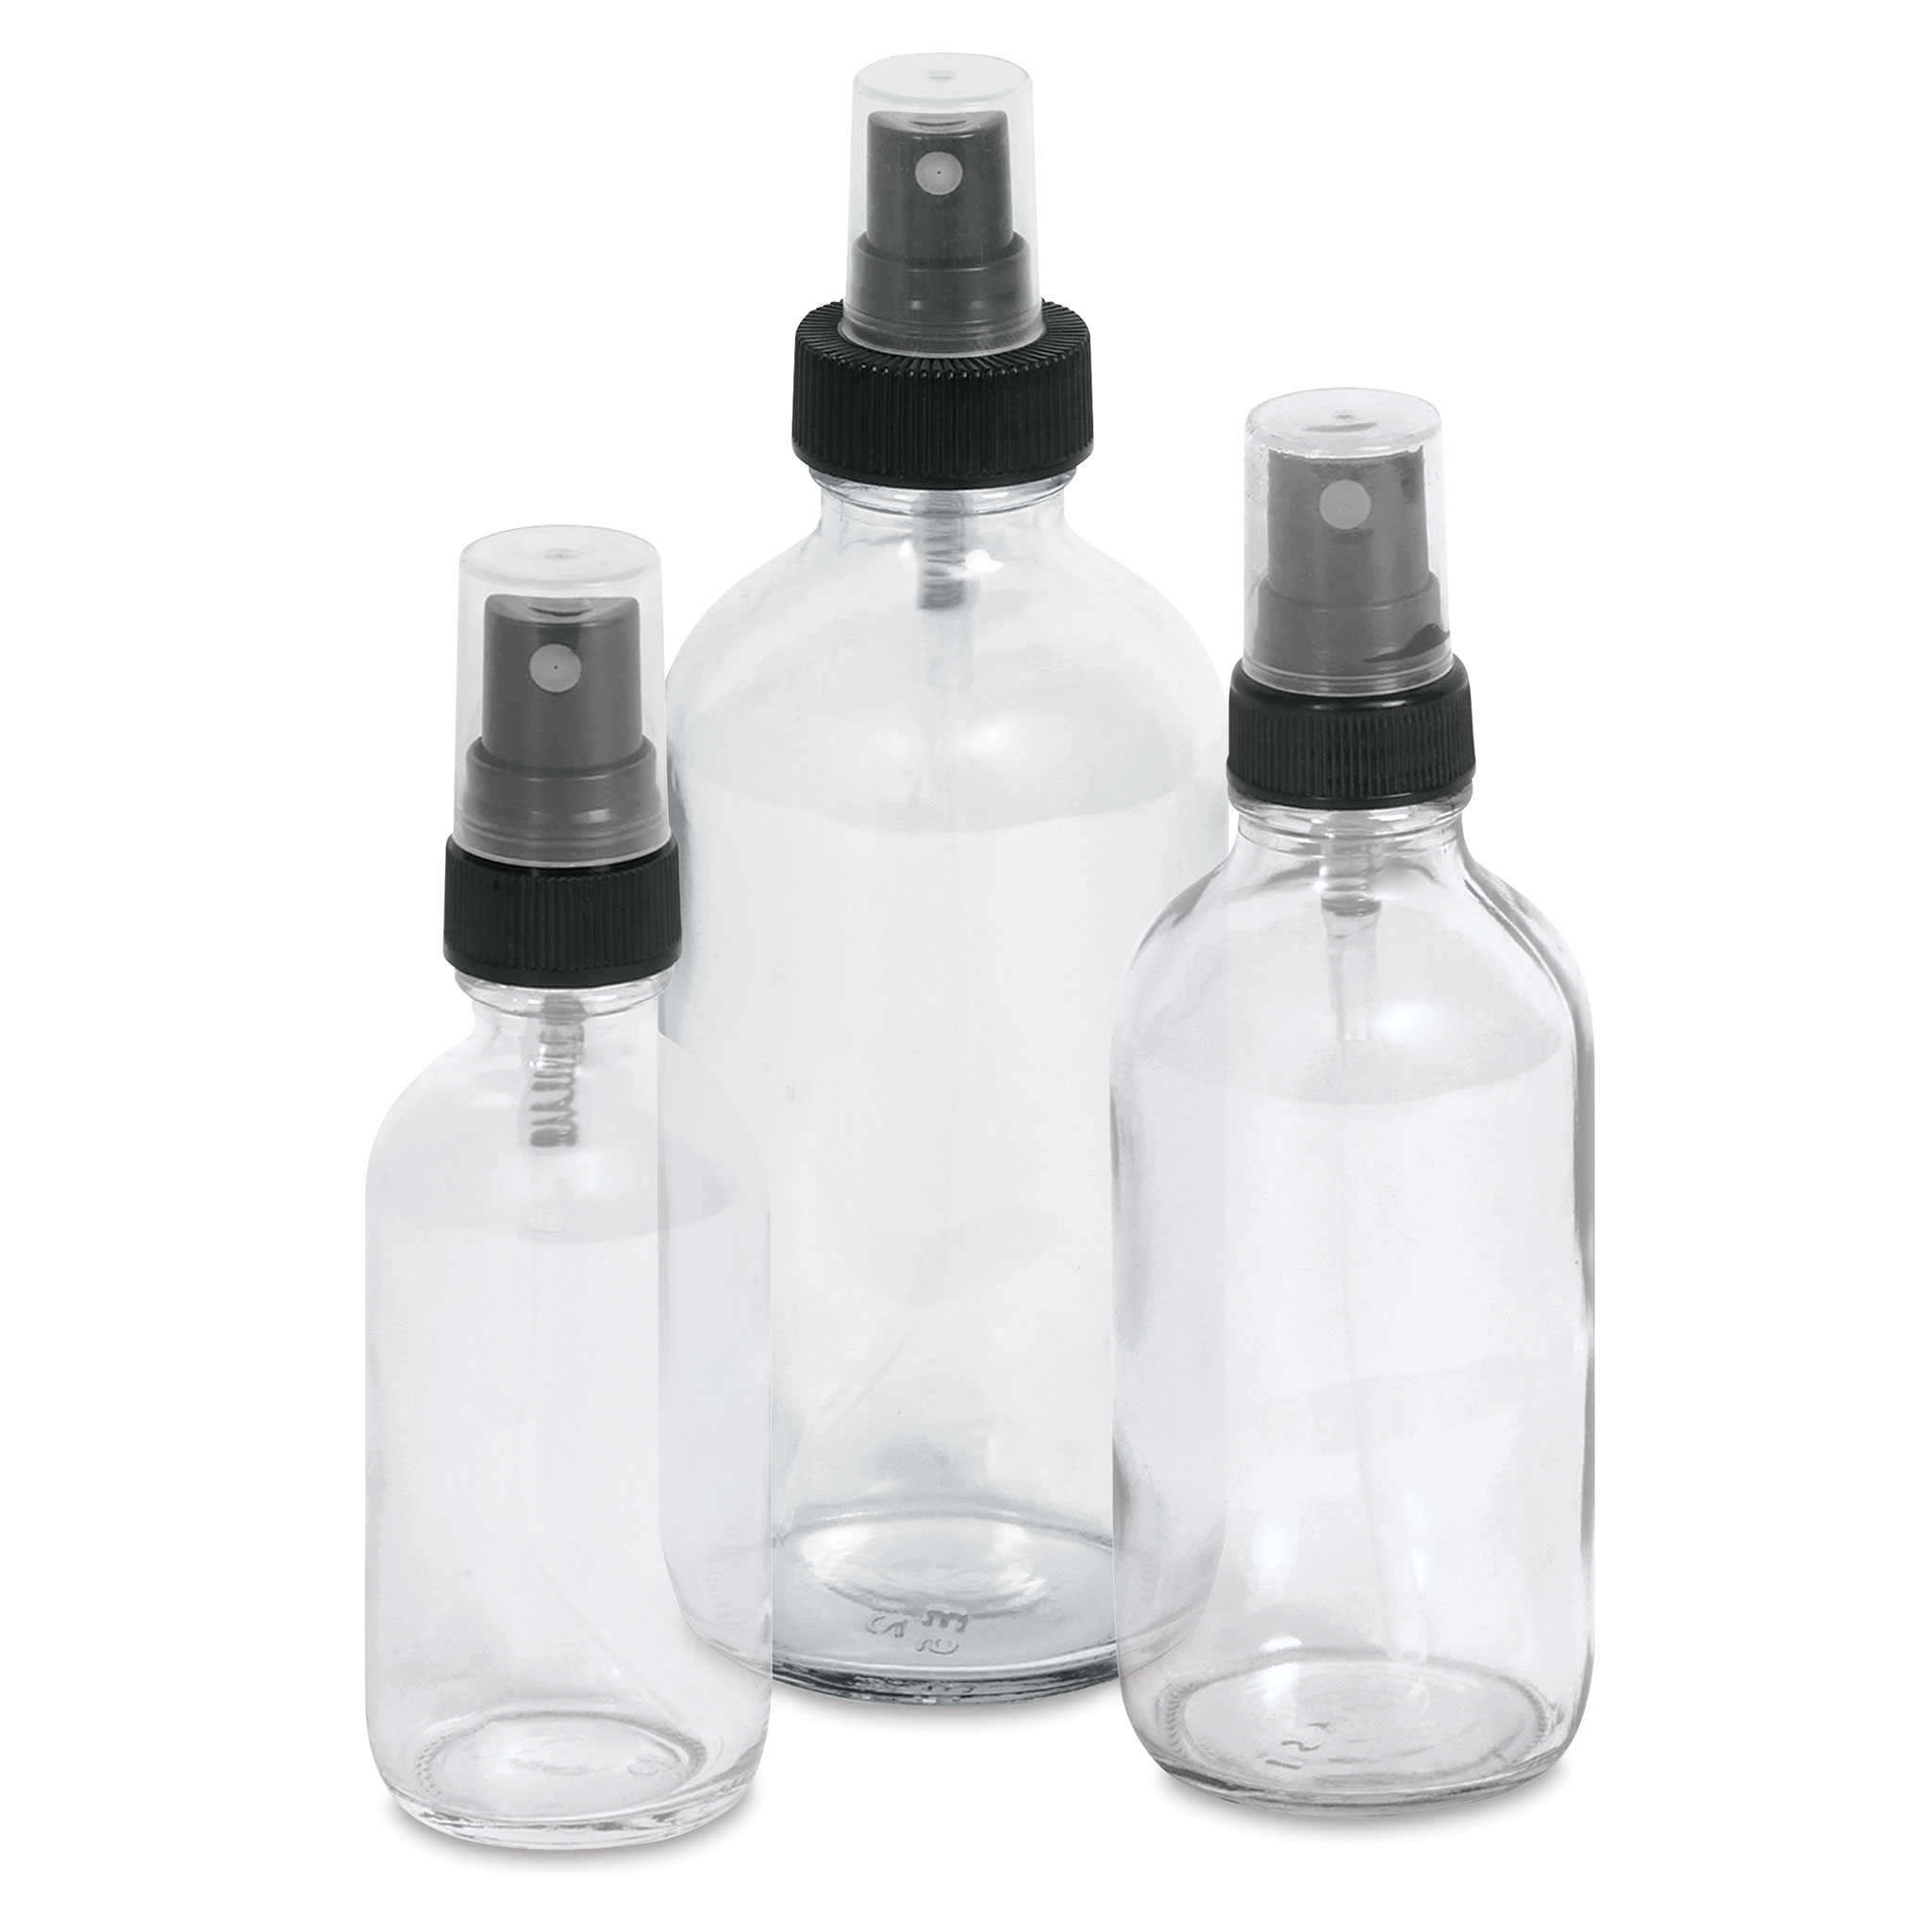 Spray bottles for cleaning, Modern farmhouse Decor, custom spray bottles –  The Artsy Spot